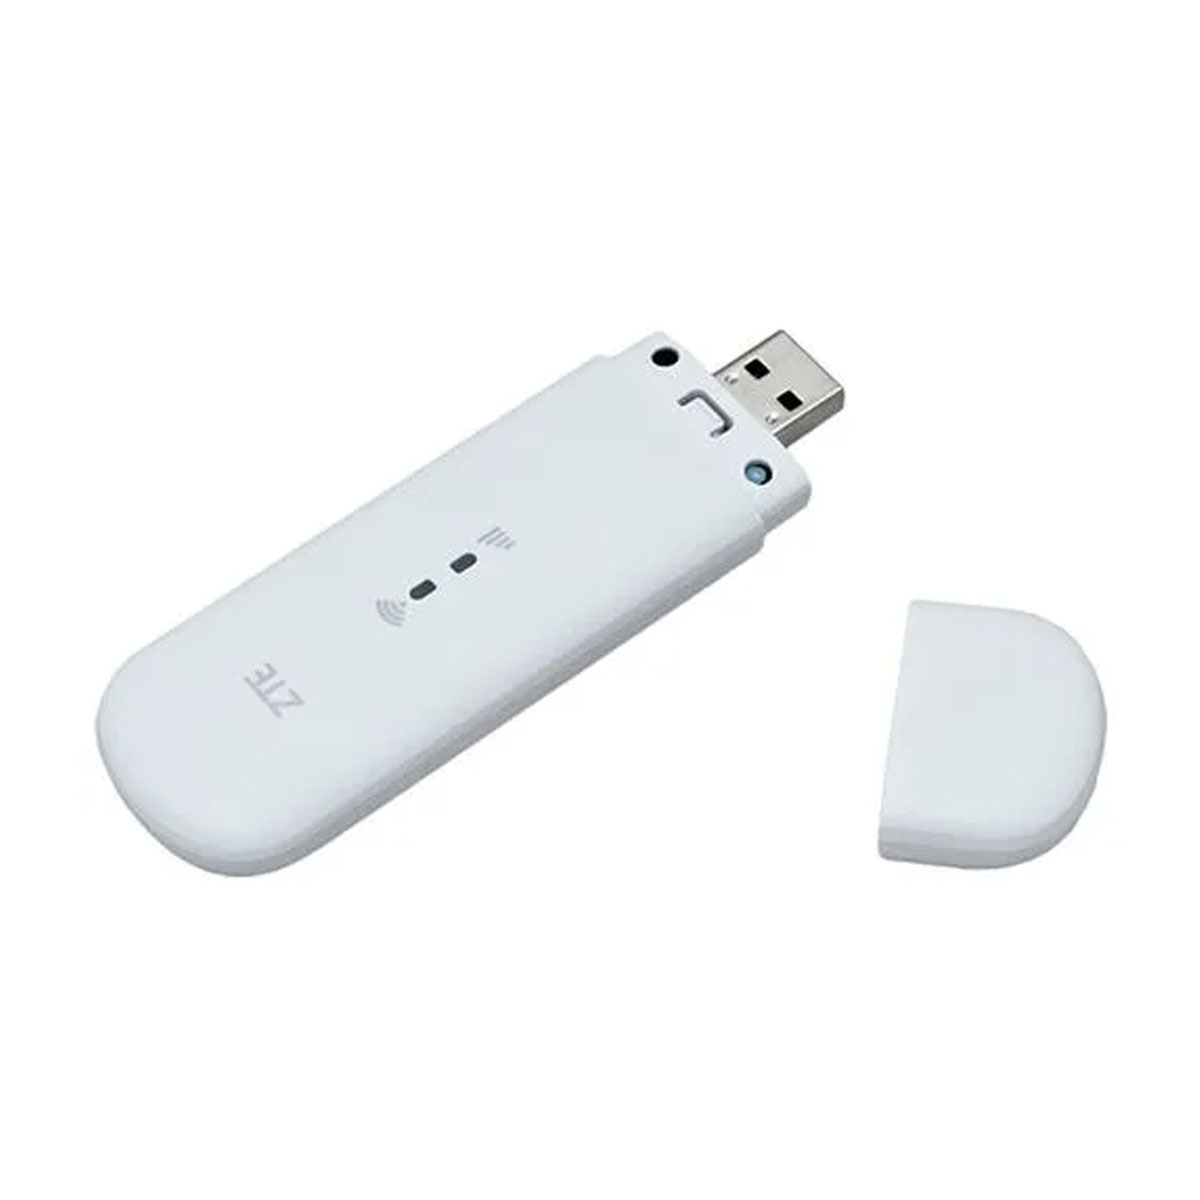 Модем USB ZTE MF79U, 4G, LTE, 3G, WiFi, цвет белый